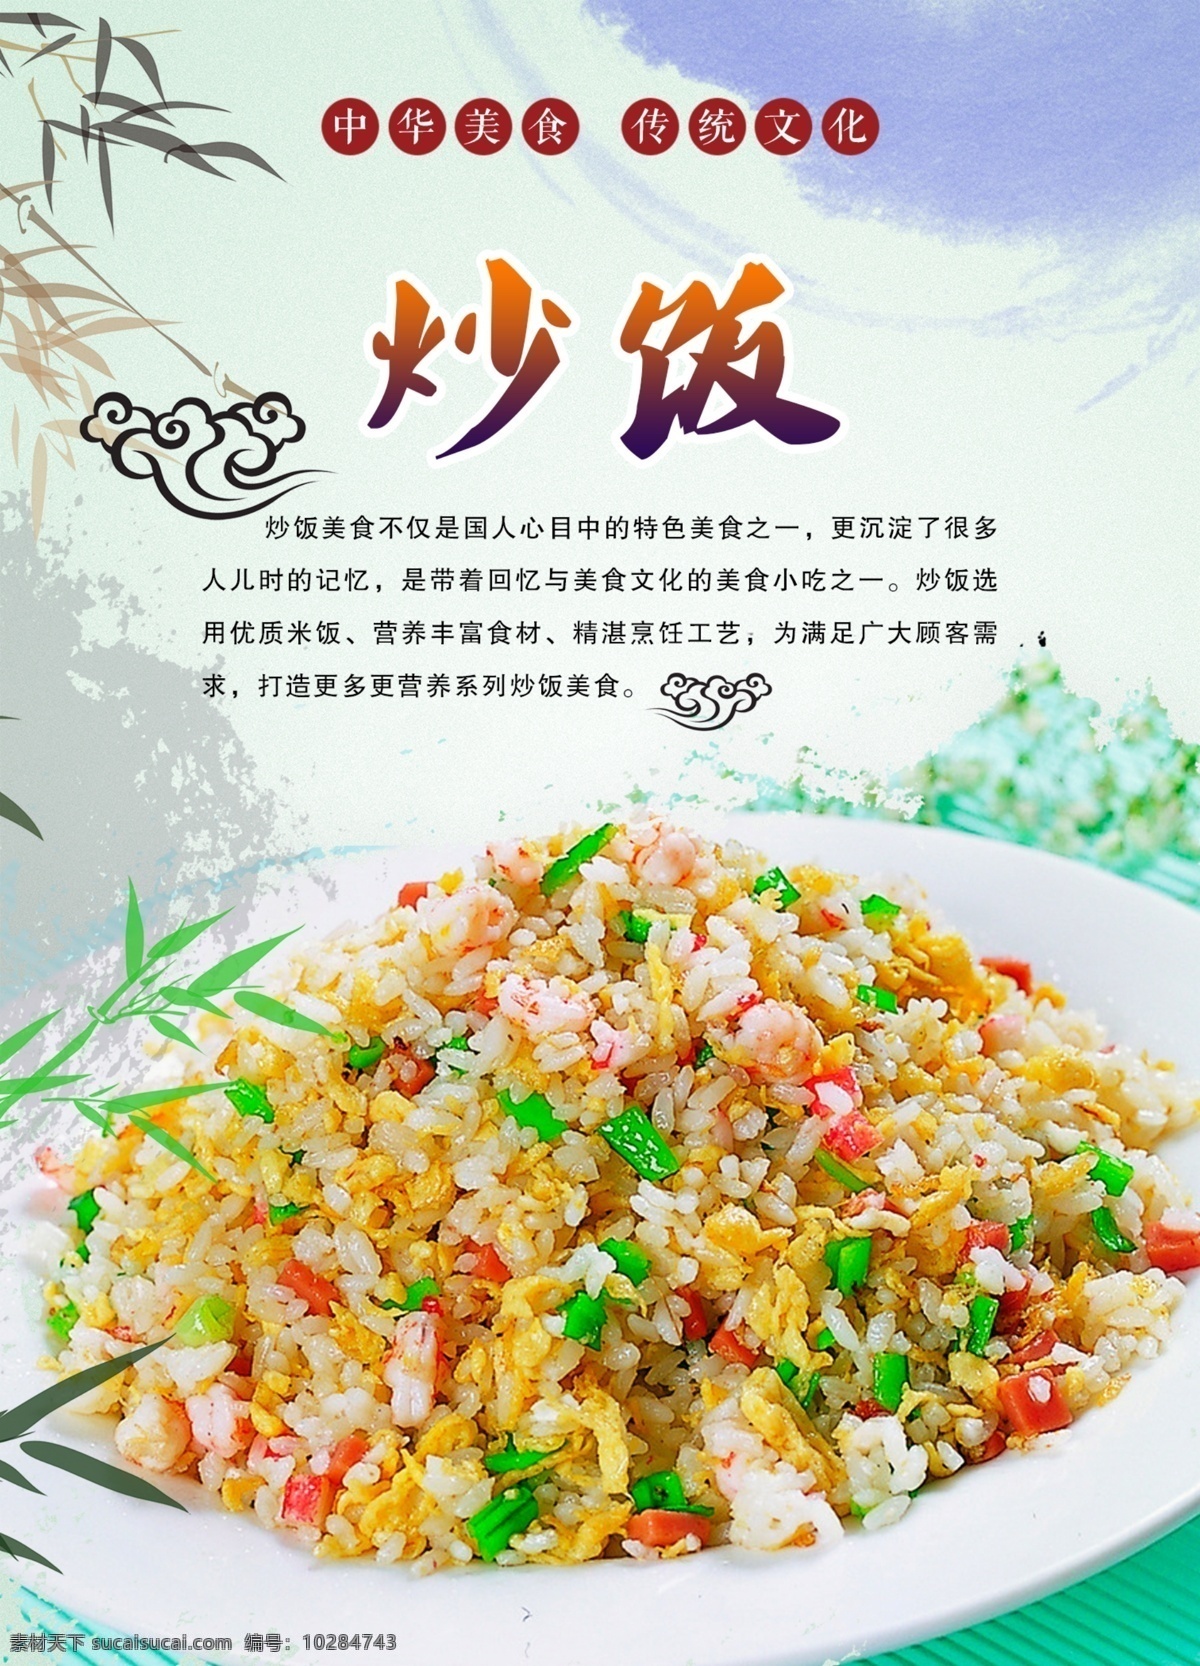 特色炒饭 营养美味 小吃 海报 灯箱片 背景 笔刷 展板 美食 中国美食 传统文化 中国风背景